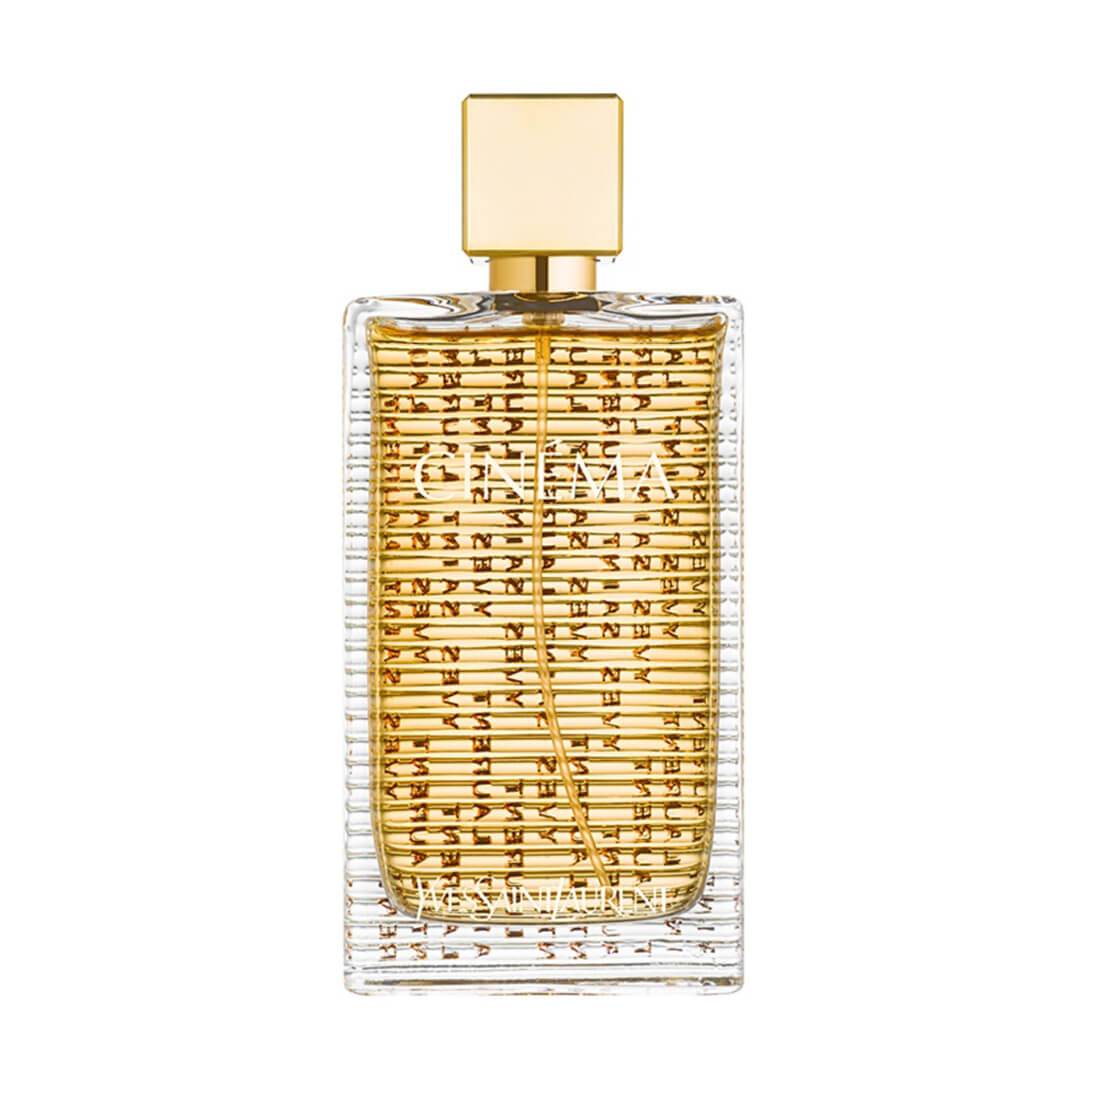 Yves Saint Laurent Cinema EDP Perfume For Women - 90ml